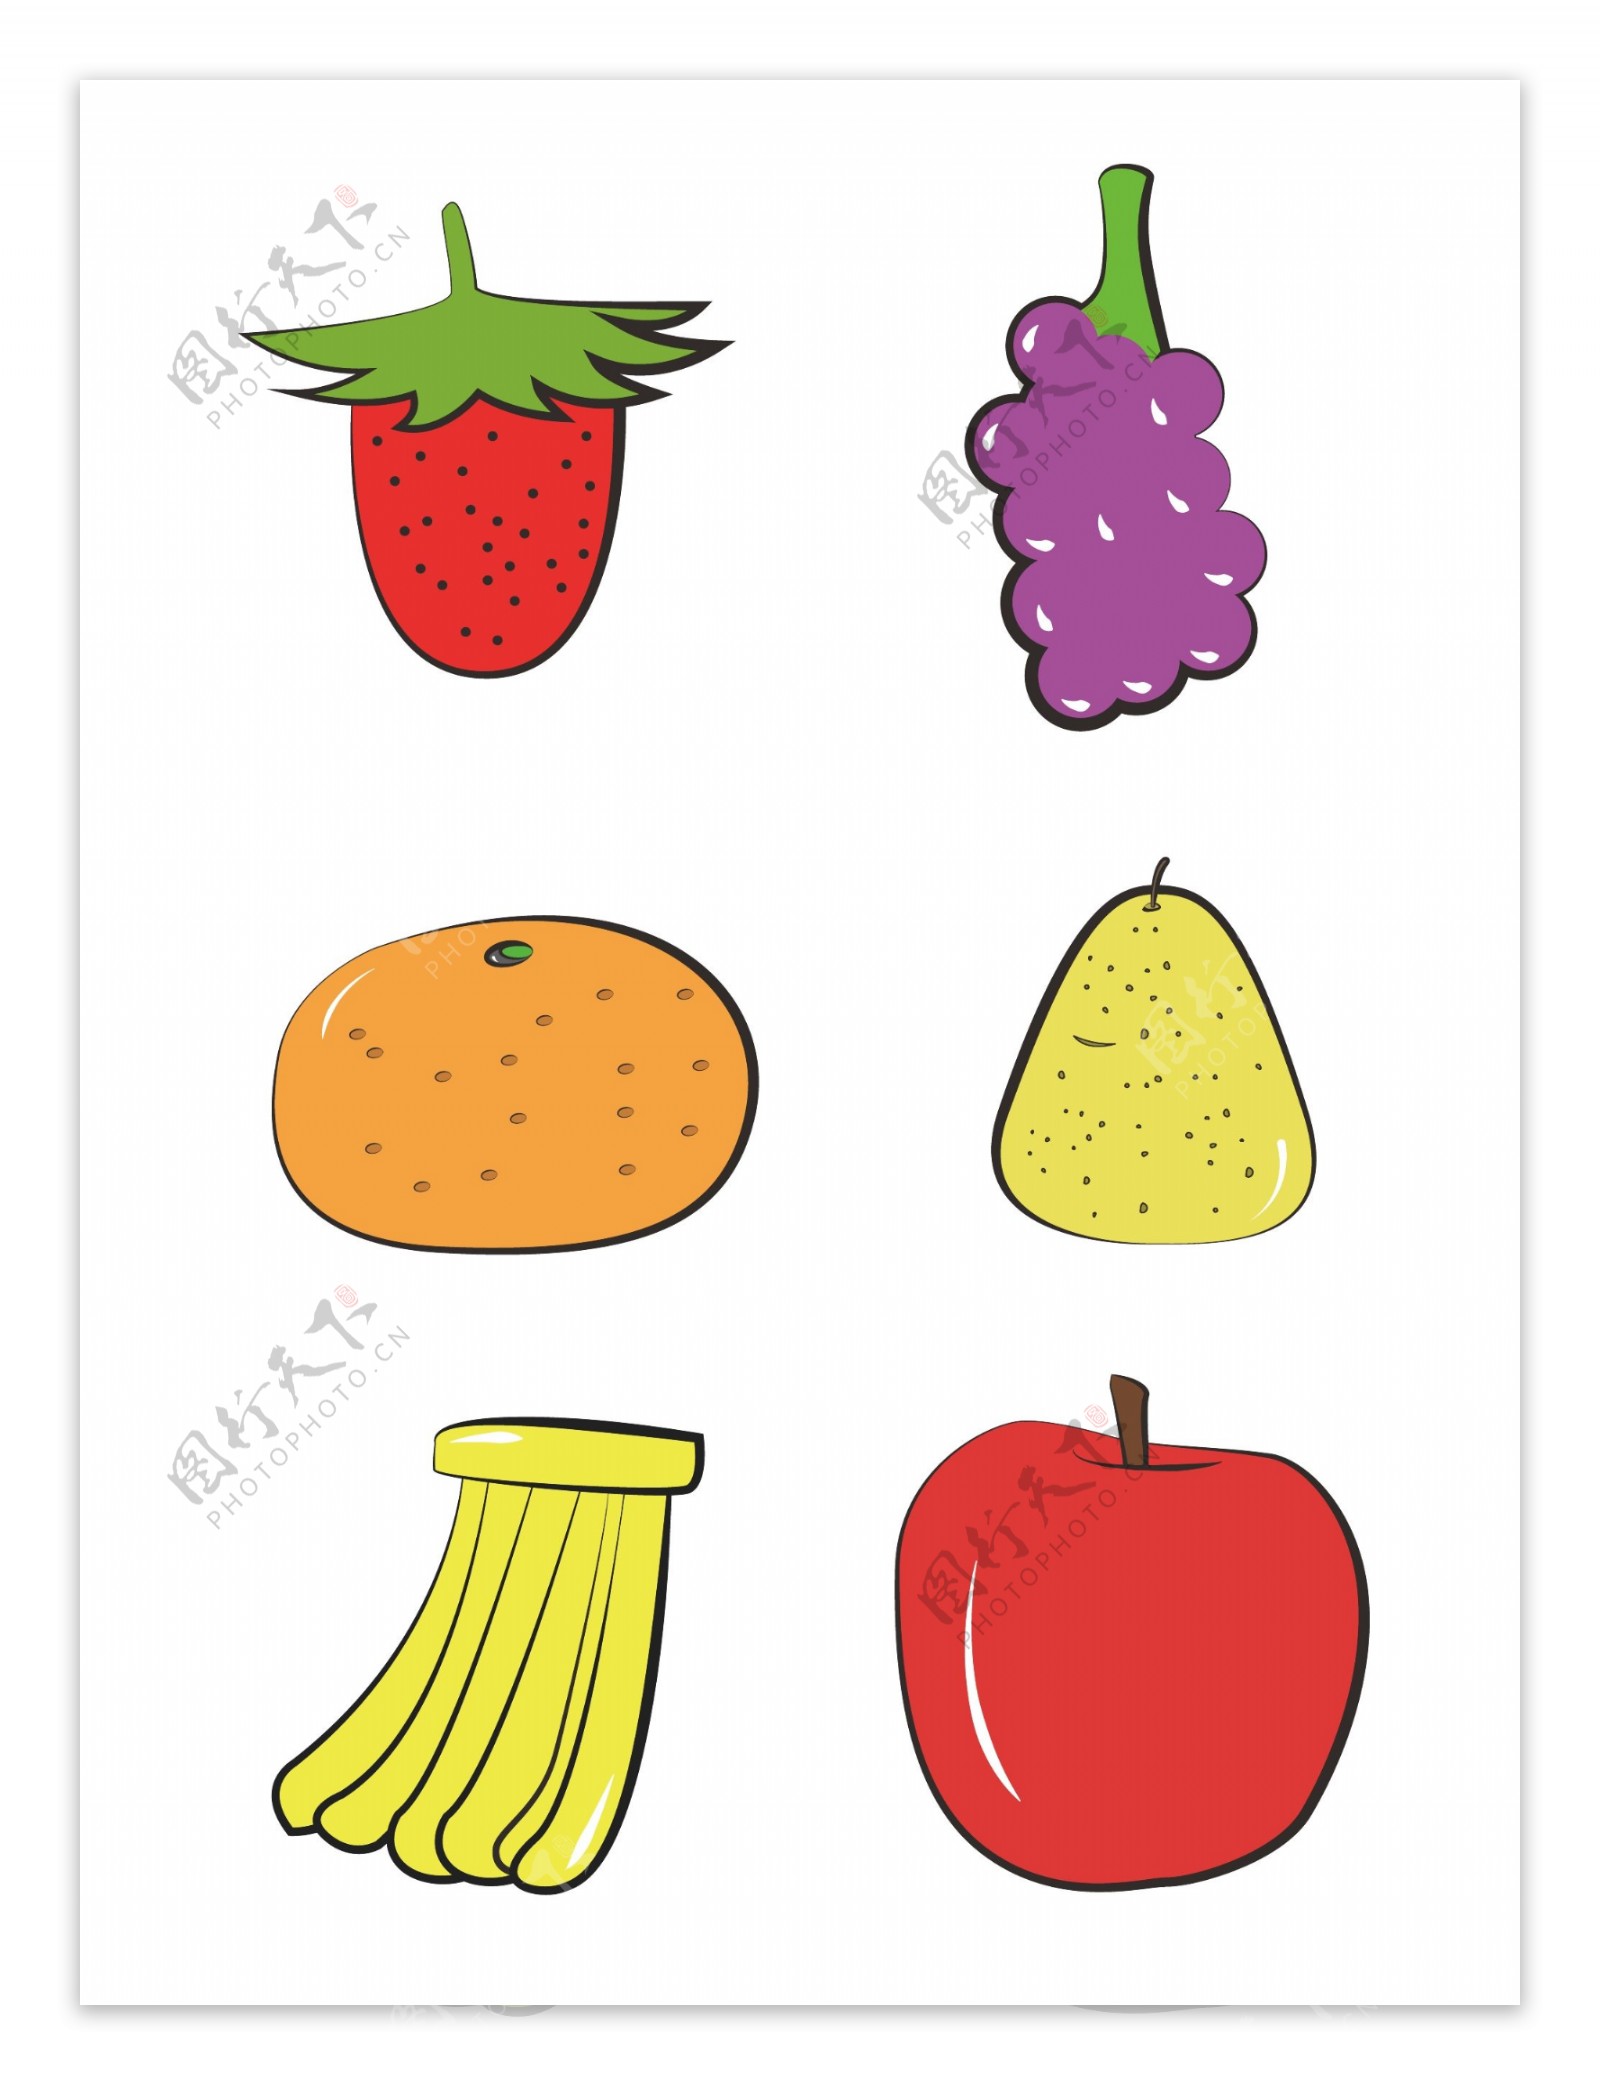 水果草莓葡萄橘子梨香蕉苹果简约图标